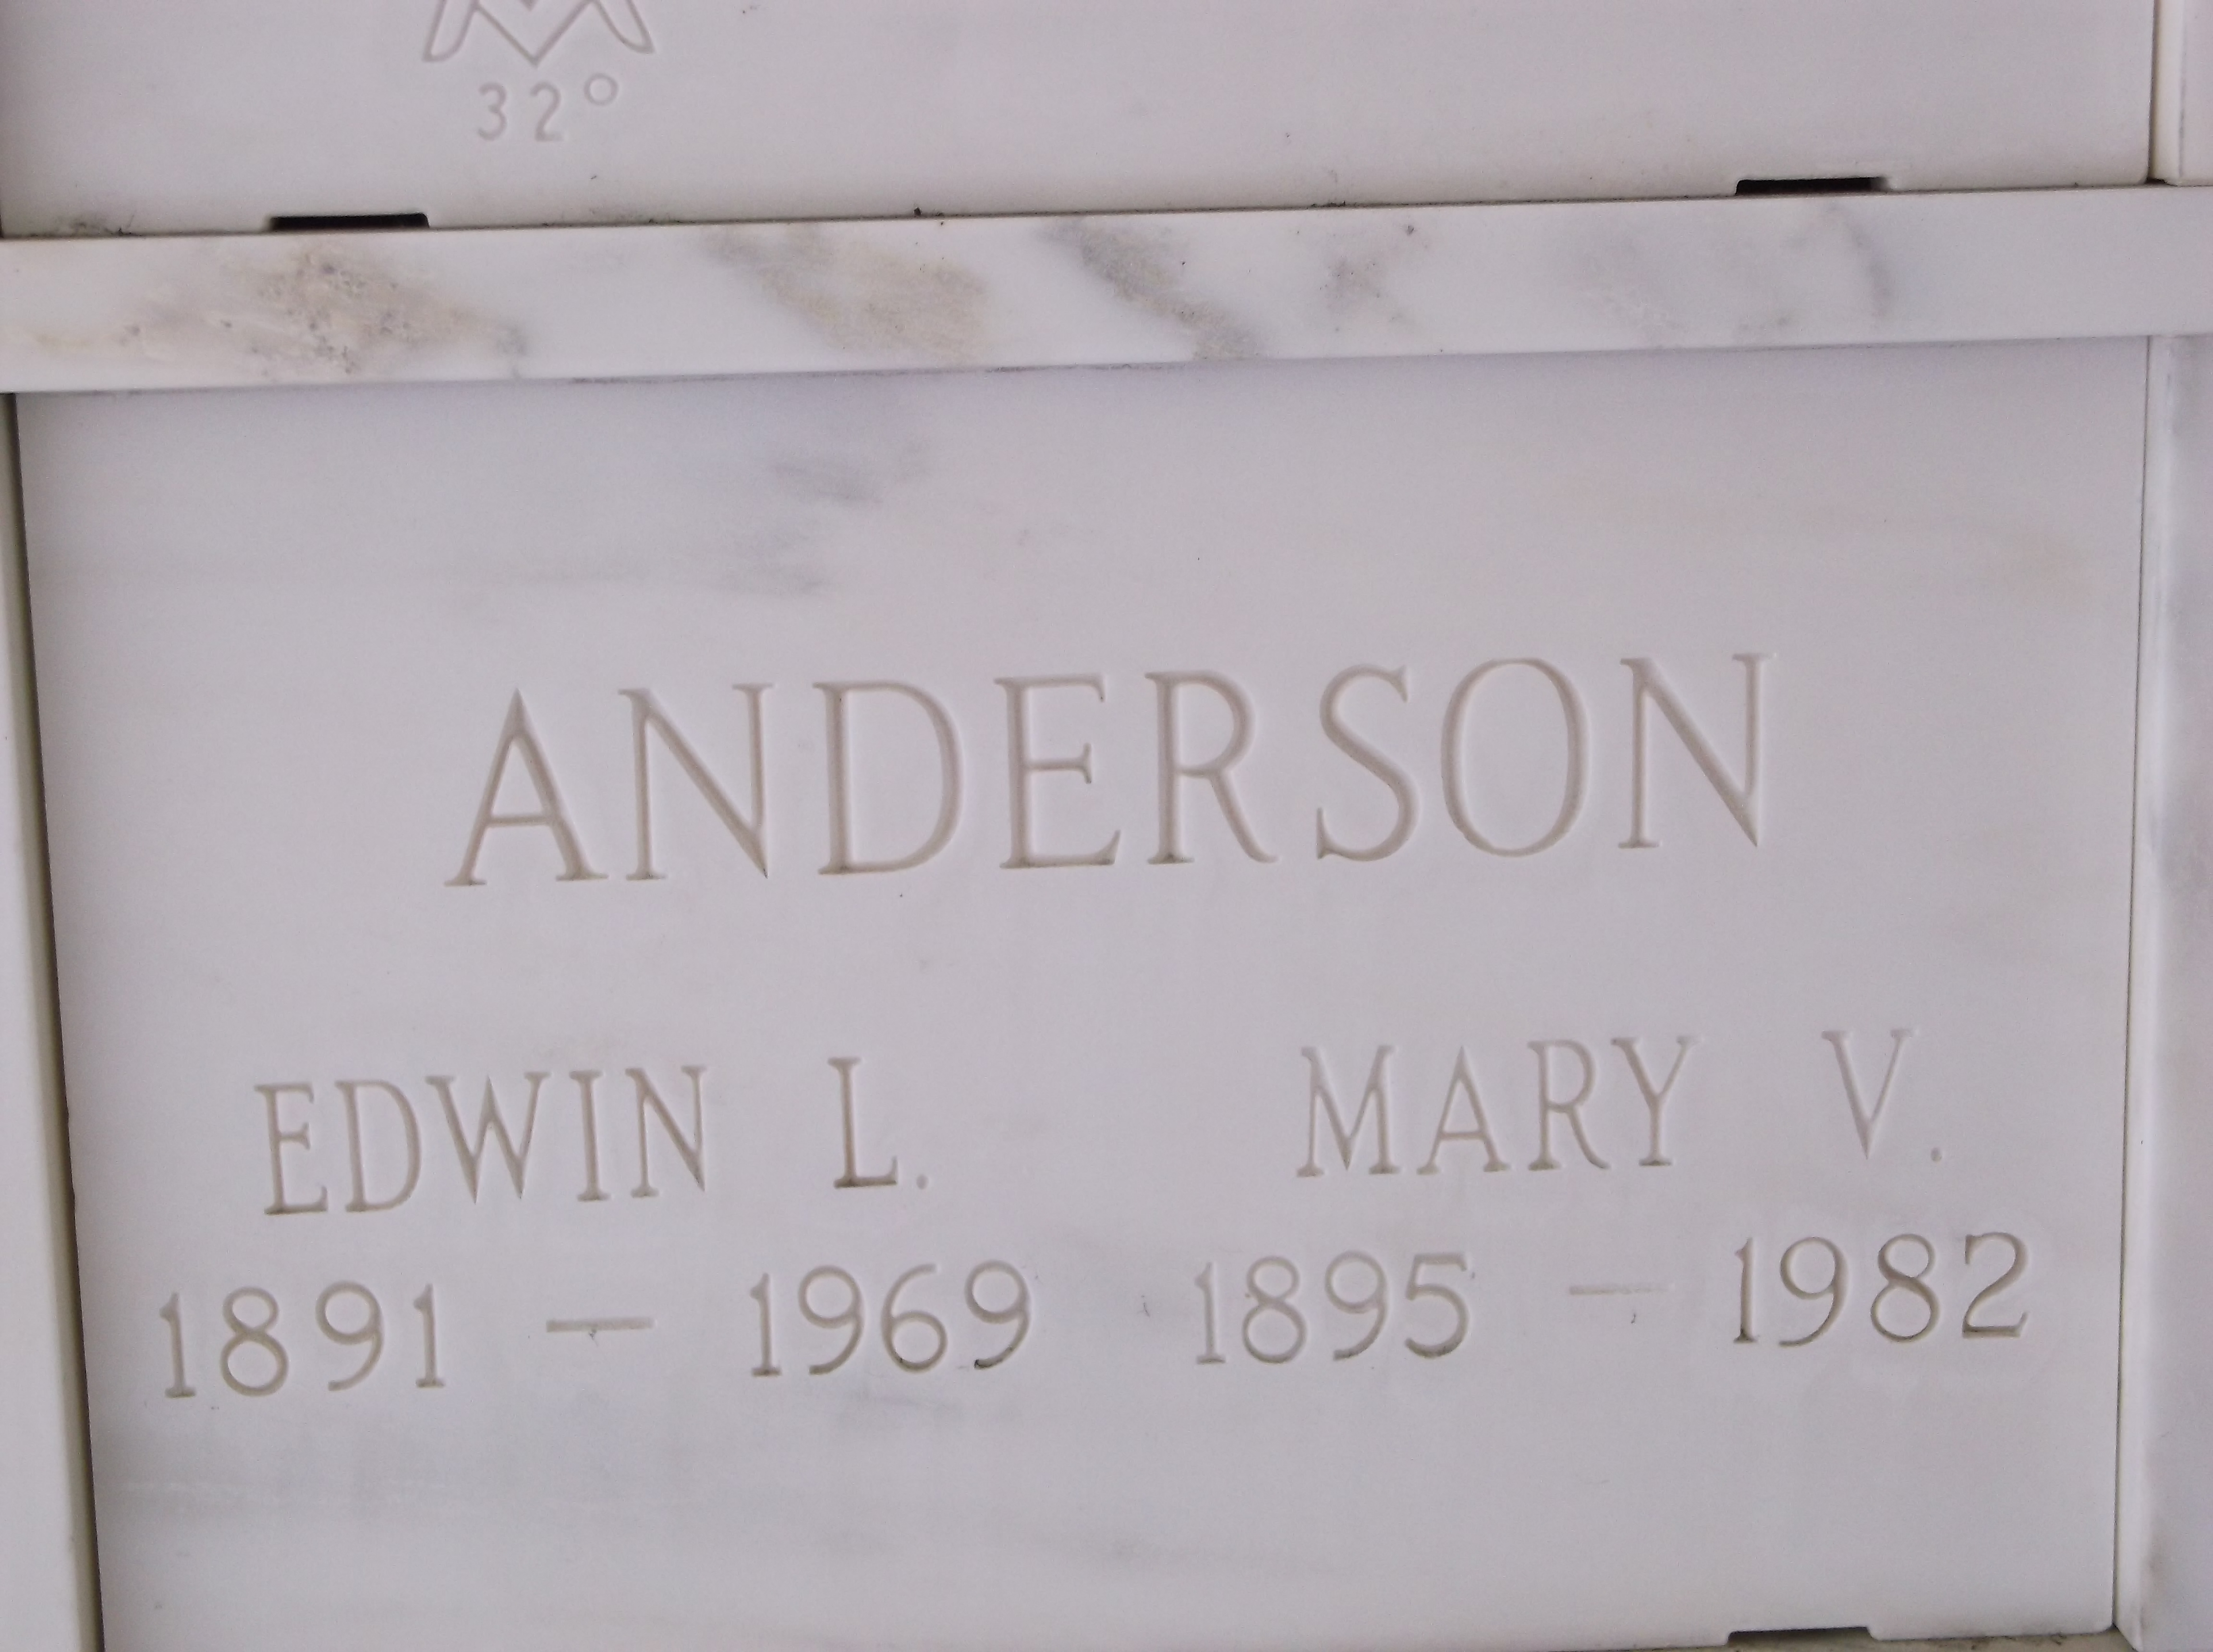 Mary V Anderson